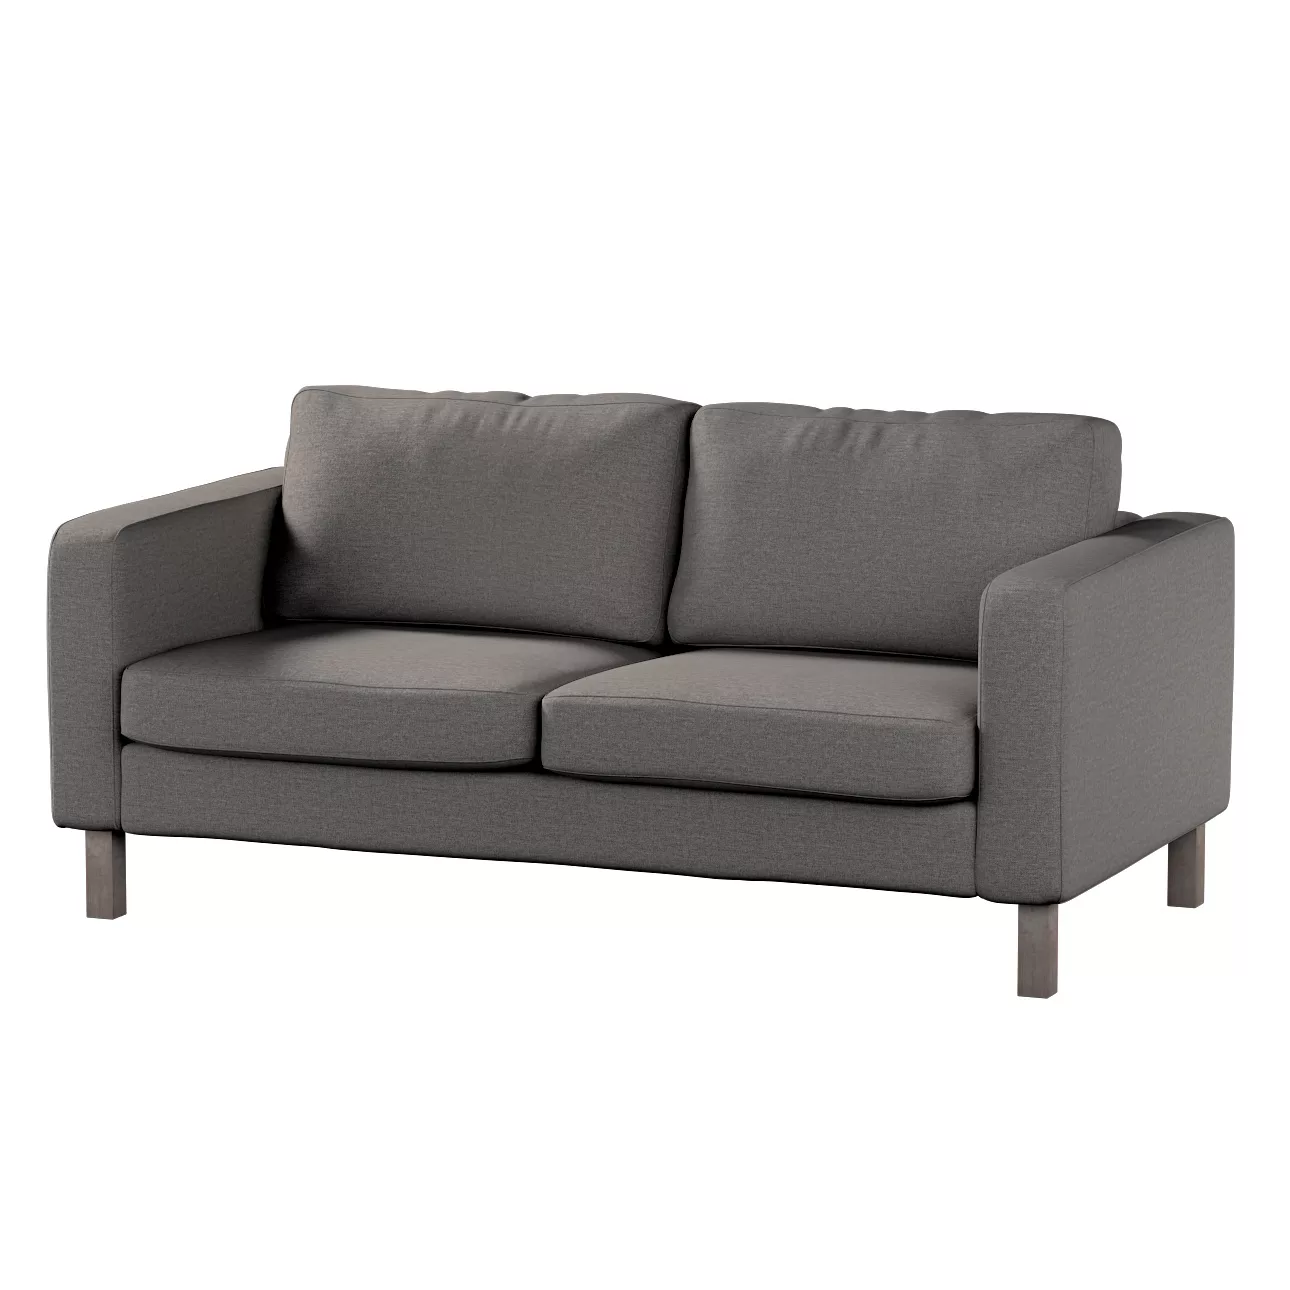 Bezug für Karlstad 2-Sitzer Sofa nicht ausklappbar, dunkelgrau, Sofahusse, günstig online kaufen